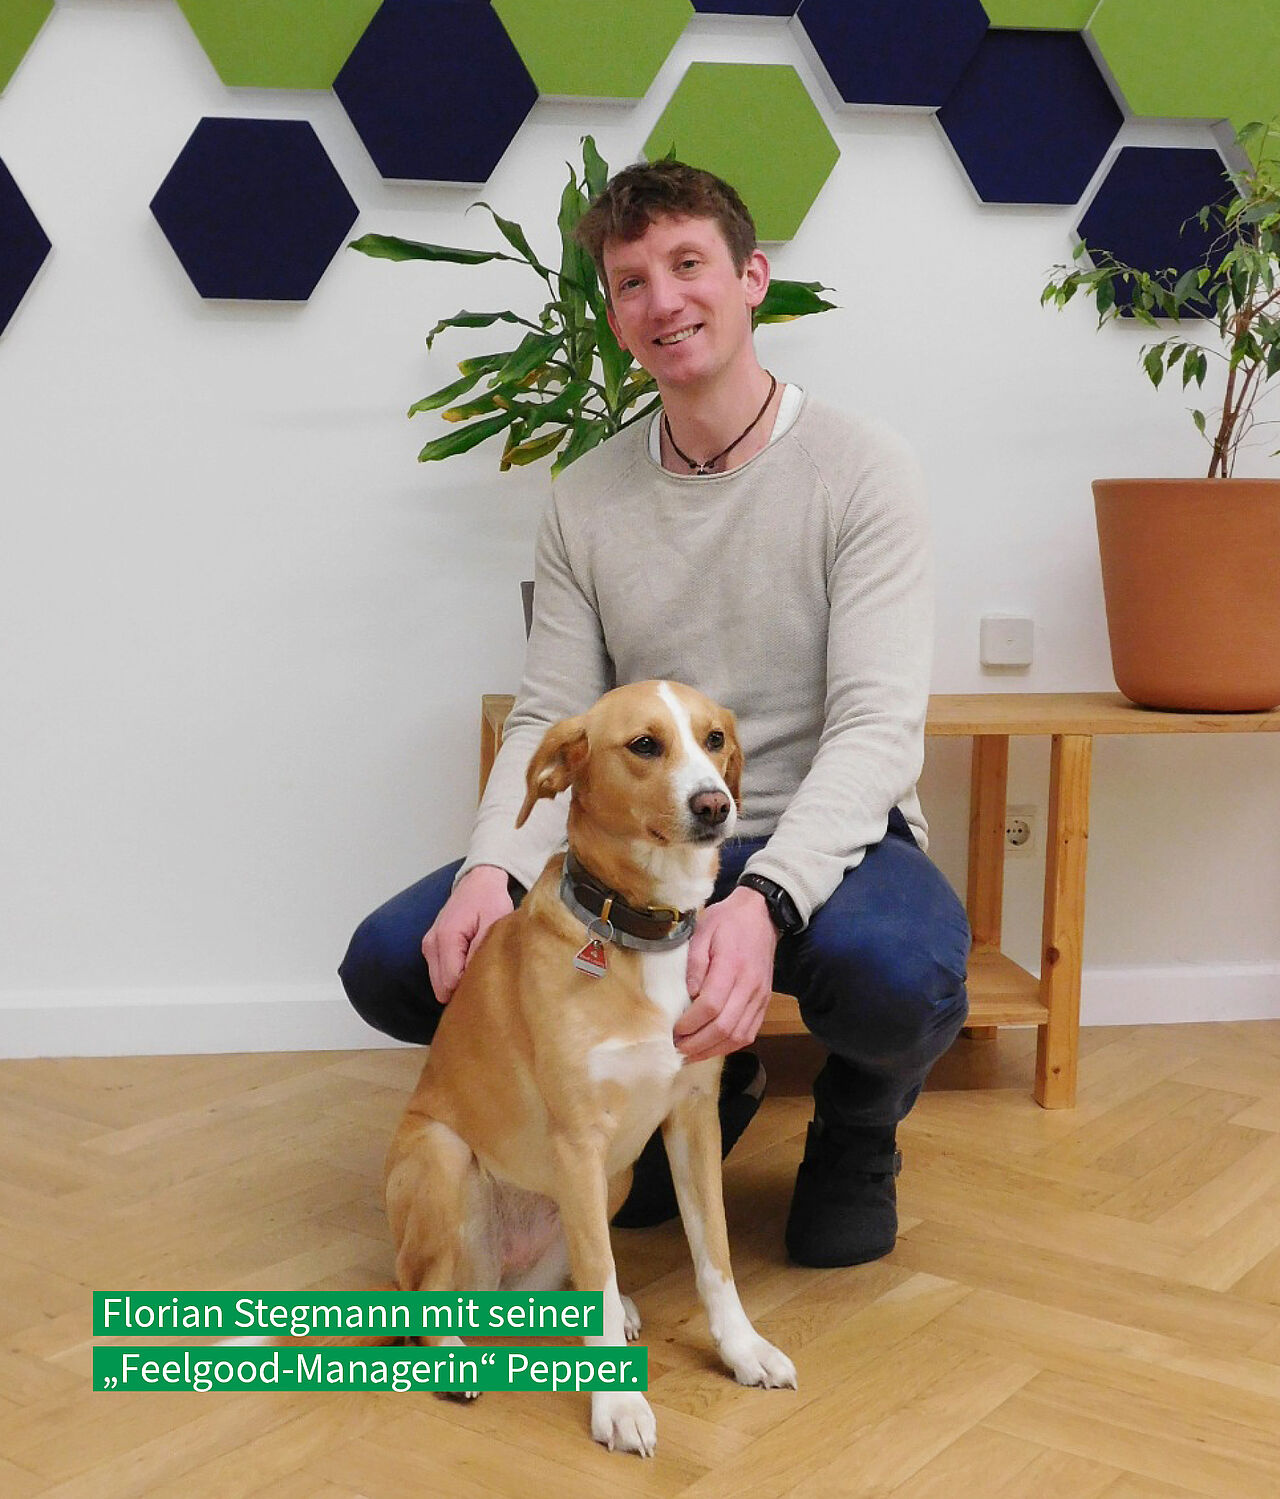 lorian Stegmann kniet lächelnd neben seinem Hund Pepper in einem Büro. Darunter steht der Text: 'Florian Stegmann mit seiner „Feelgood-Managerin“ Pepper.'